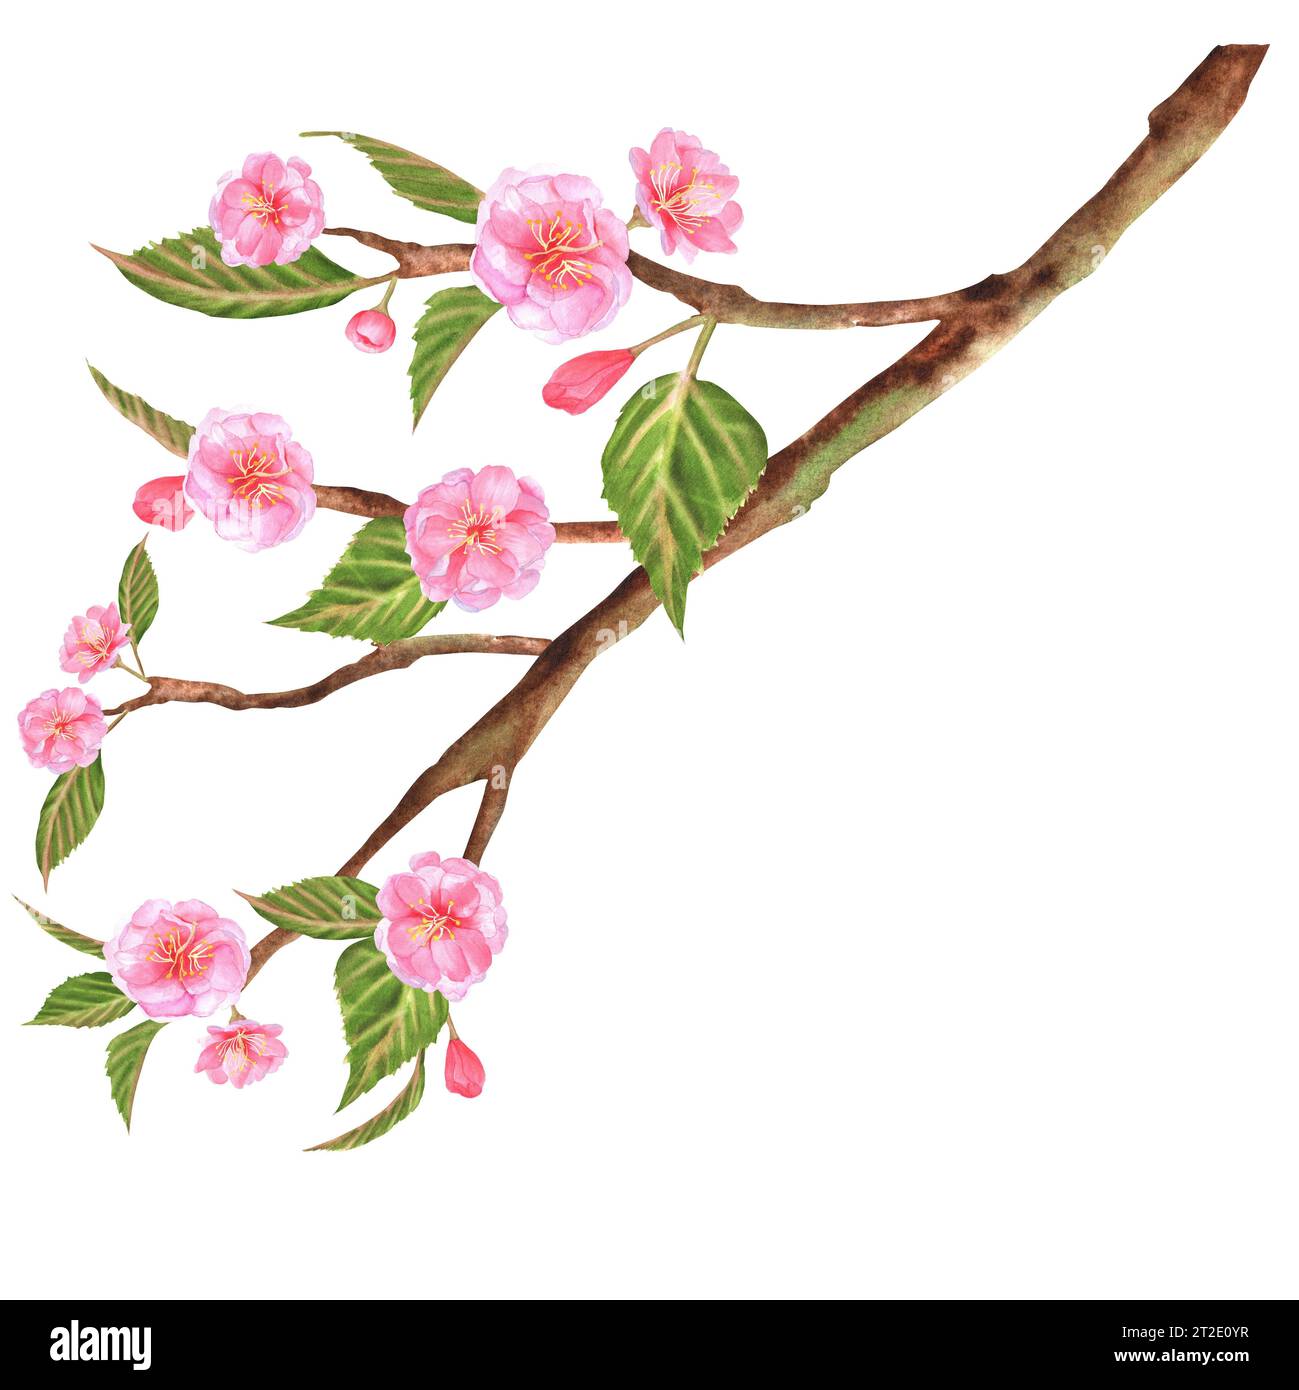 Illustration à l'aquarelle dessinée à la main. Belle branche de sakura (cerisier) avec des fleurs roses et des feuilles vertes Banque D'Images